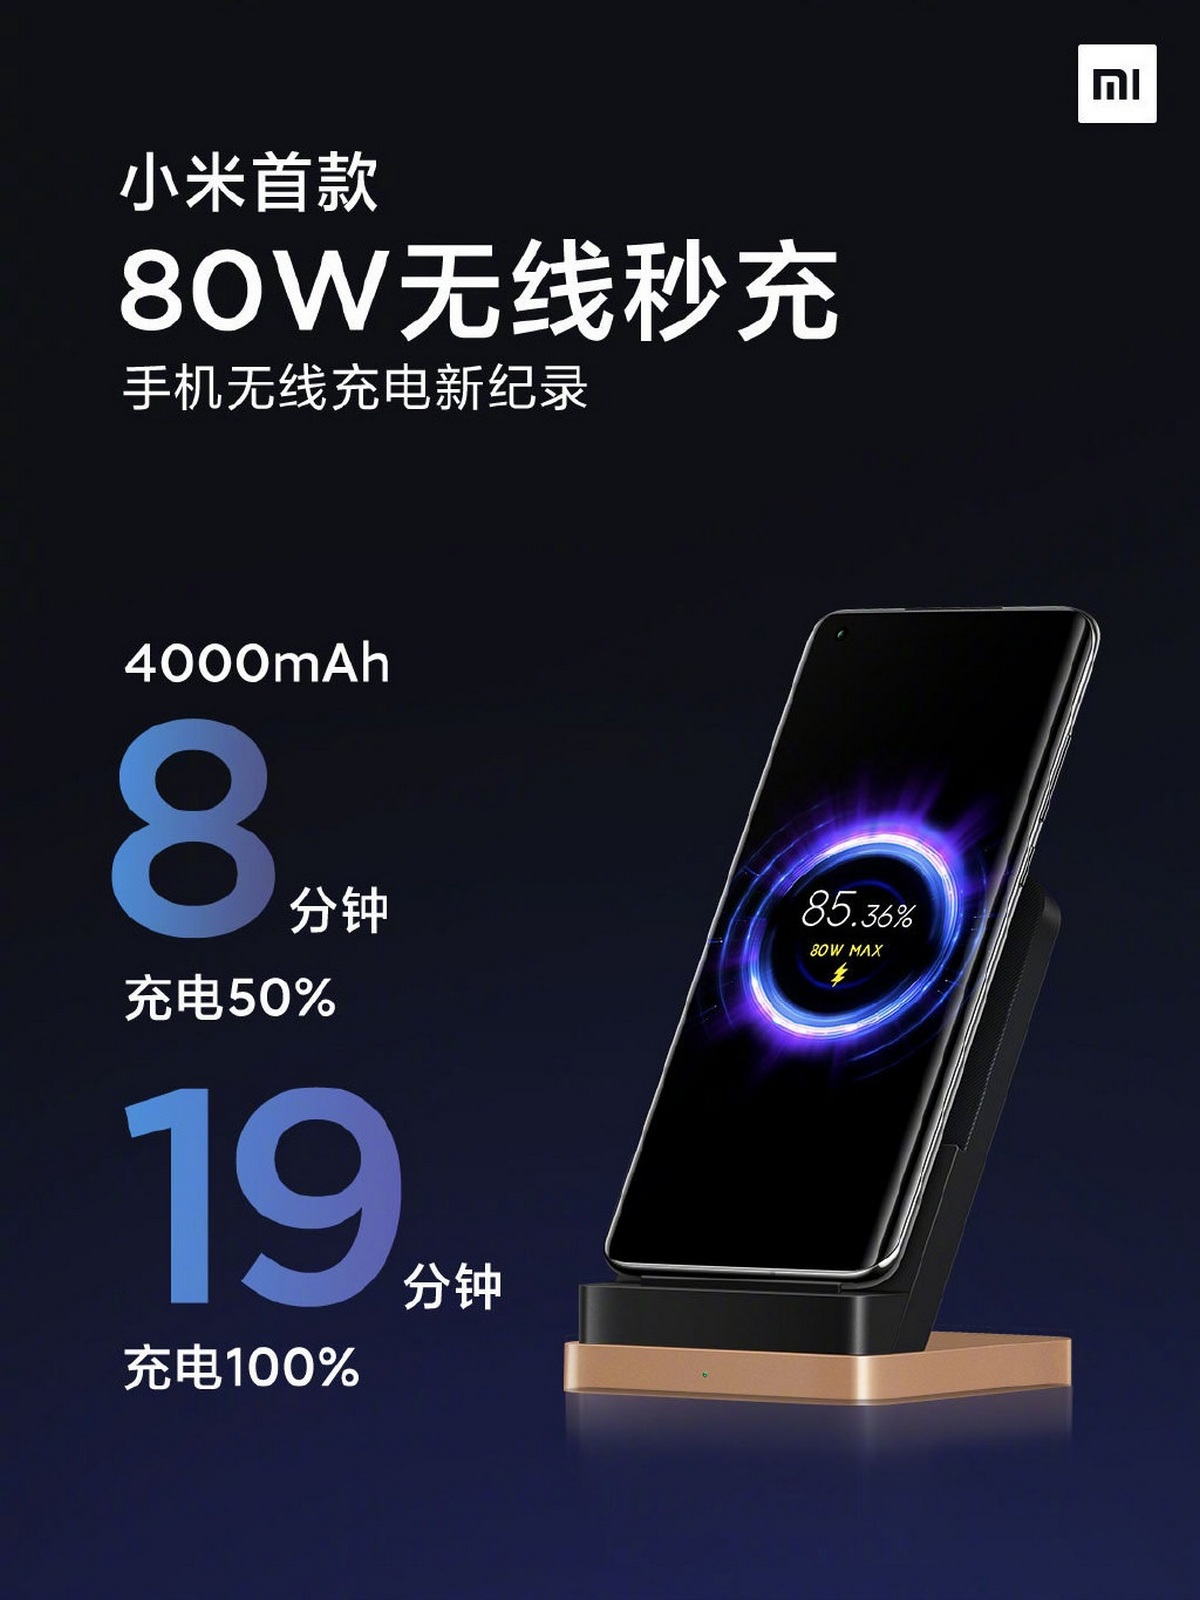 Самая быстрая беспроводная зарядка в мире от Xiaomi: 100 % заряда всего за 19 минут